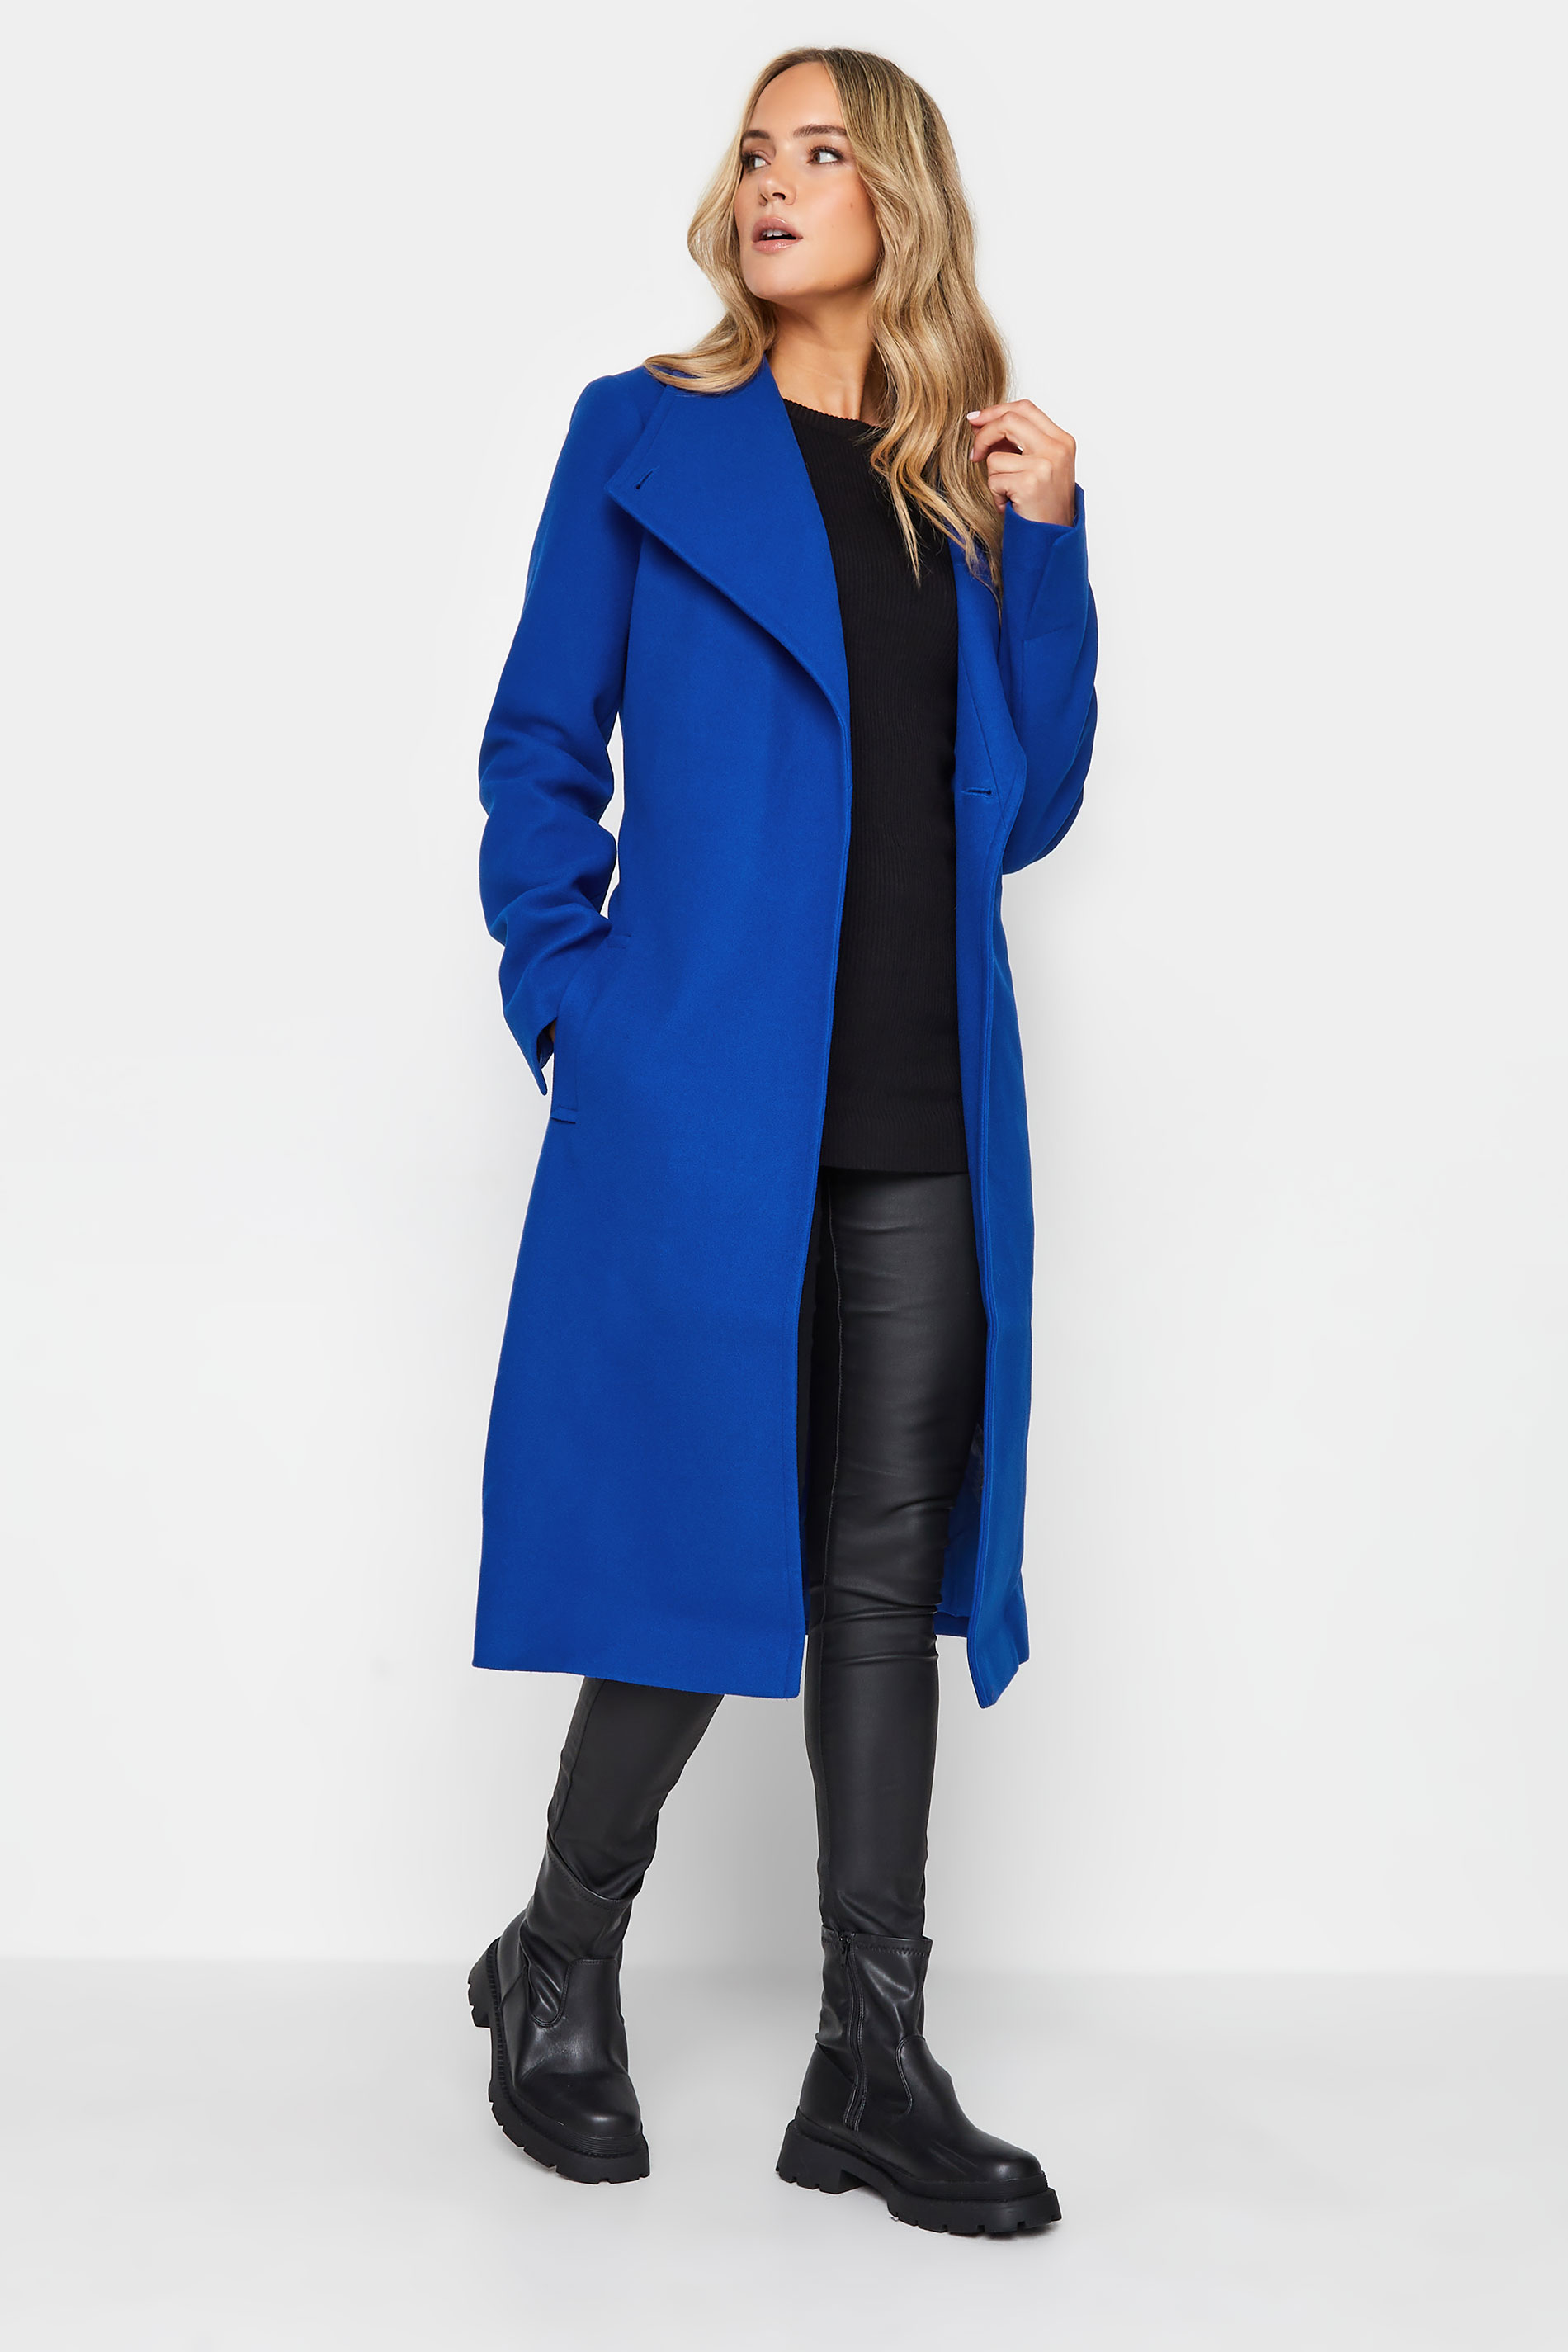 LTS Tall Women's Cobalt Blue Belted Coat | Long Tall Sally 2